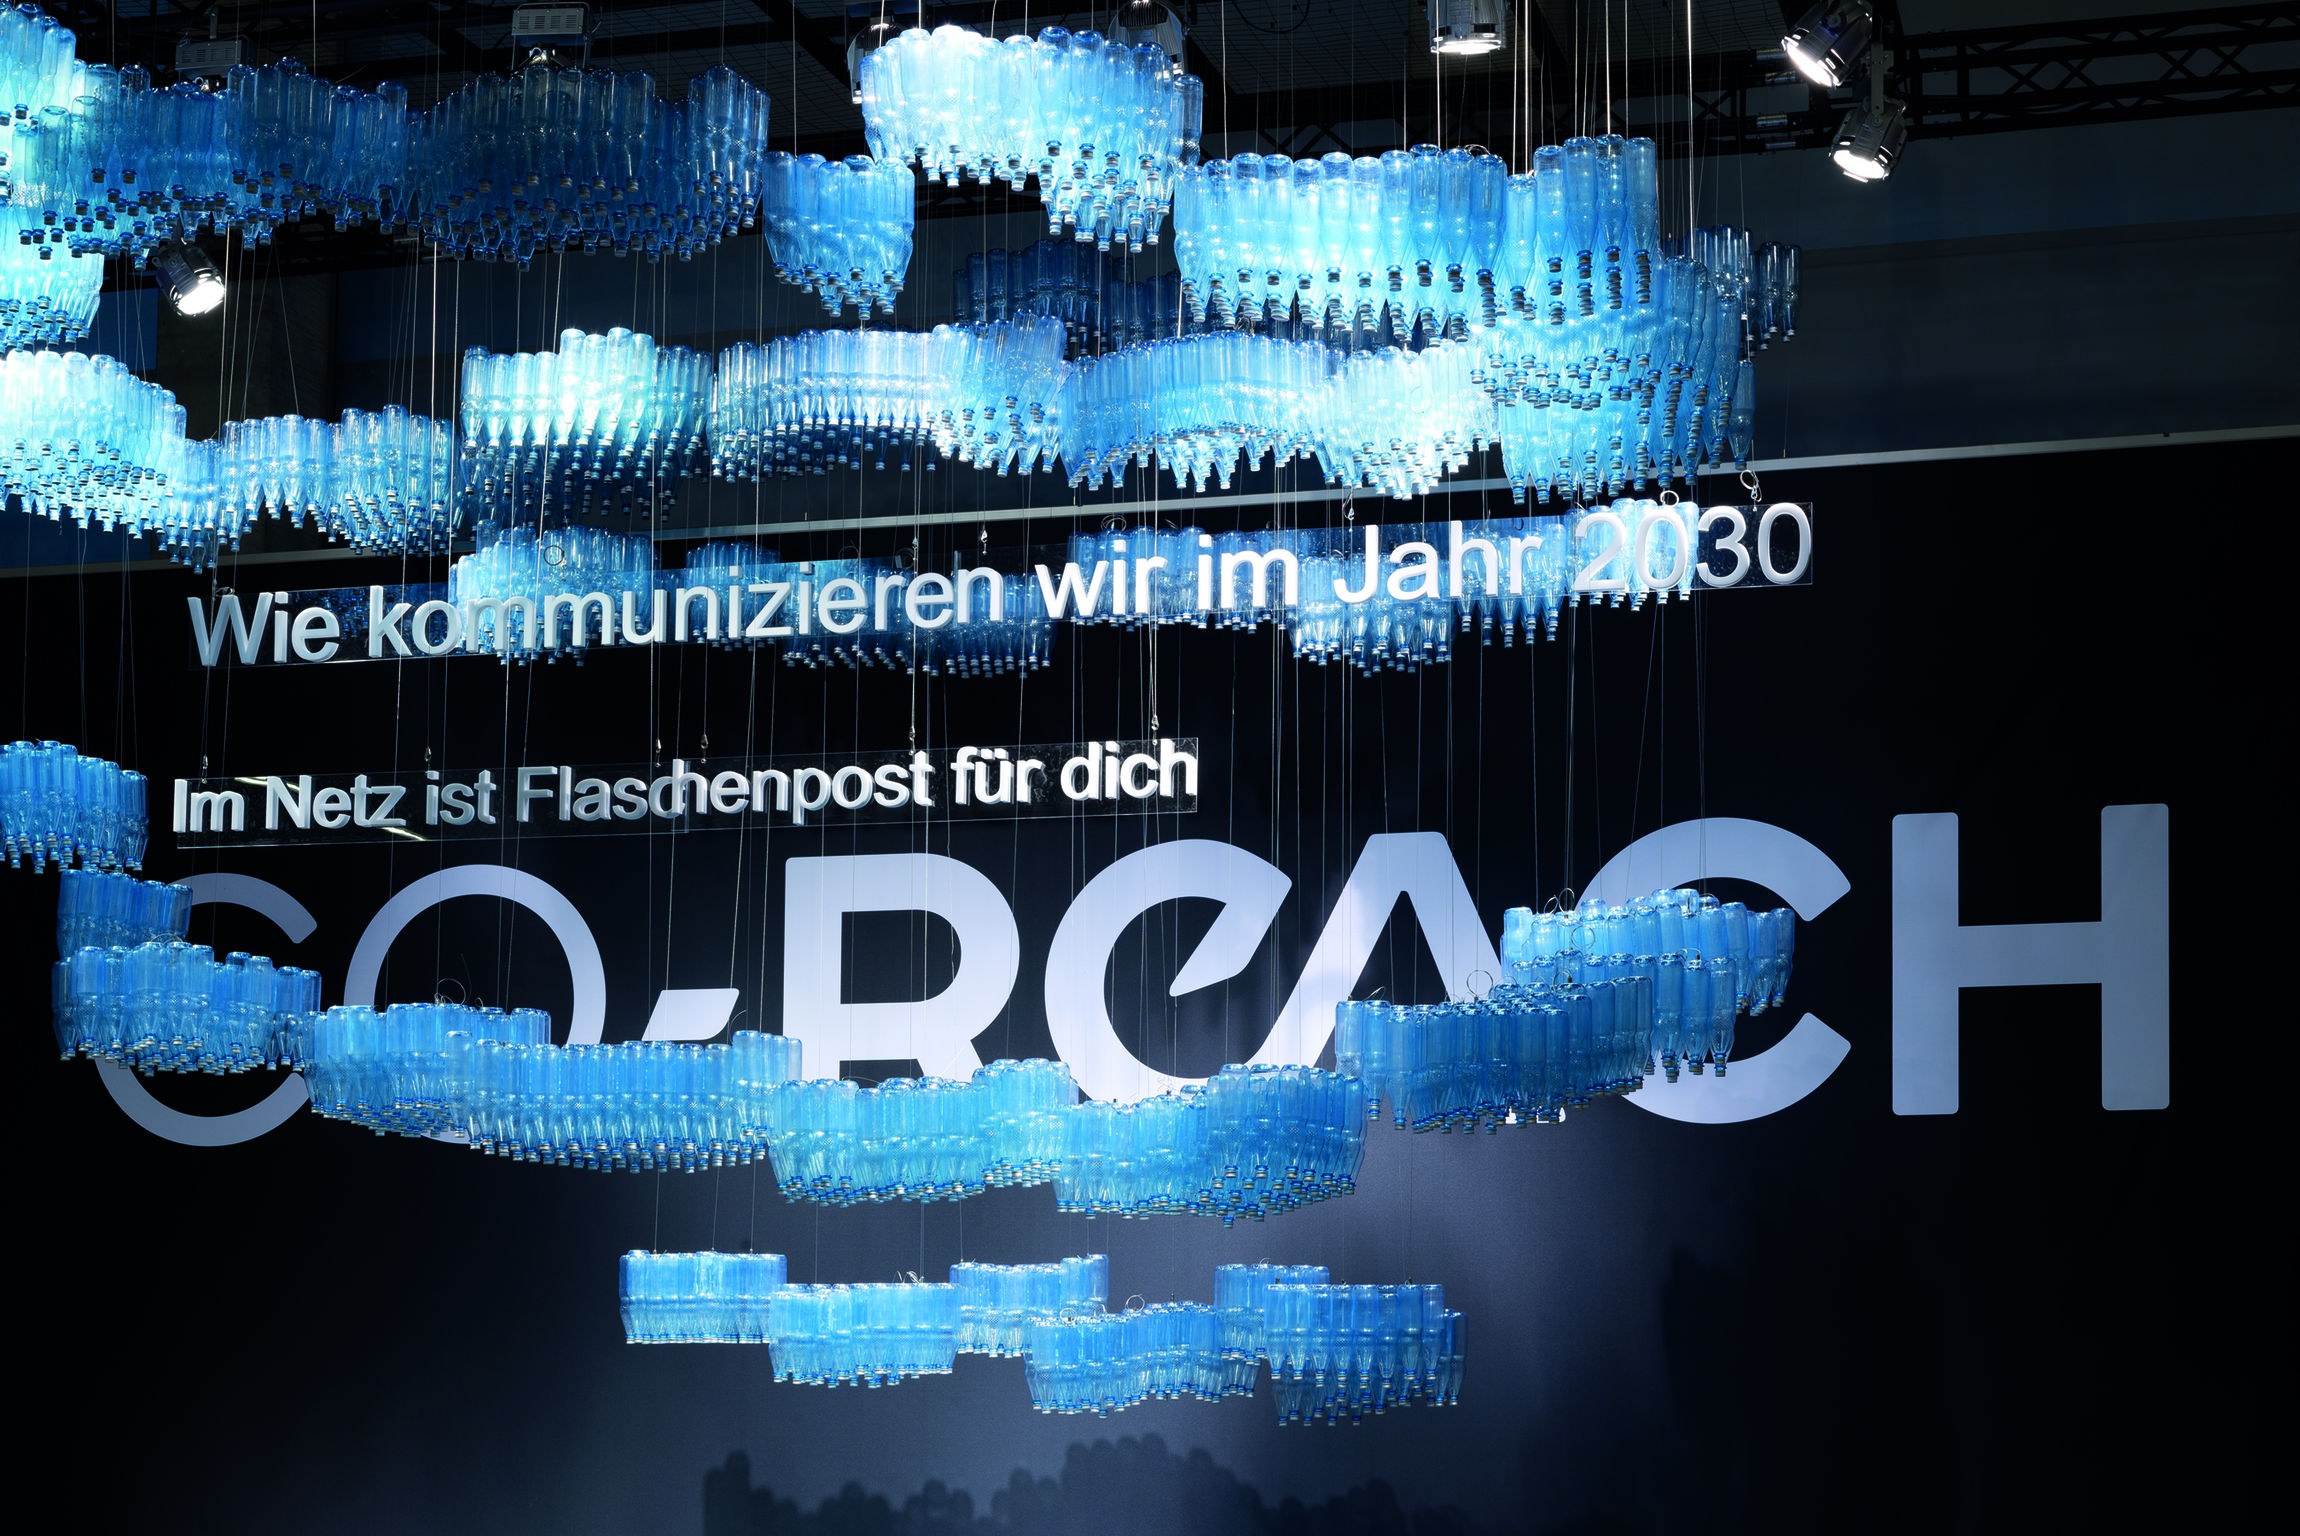 Sonderschau CO-Reach 2014